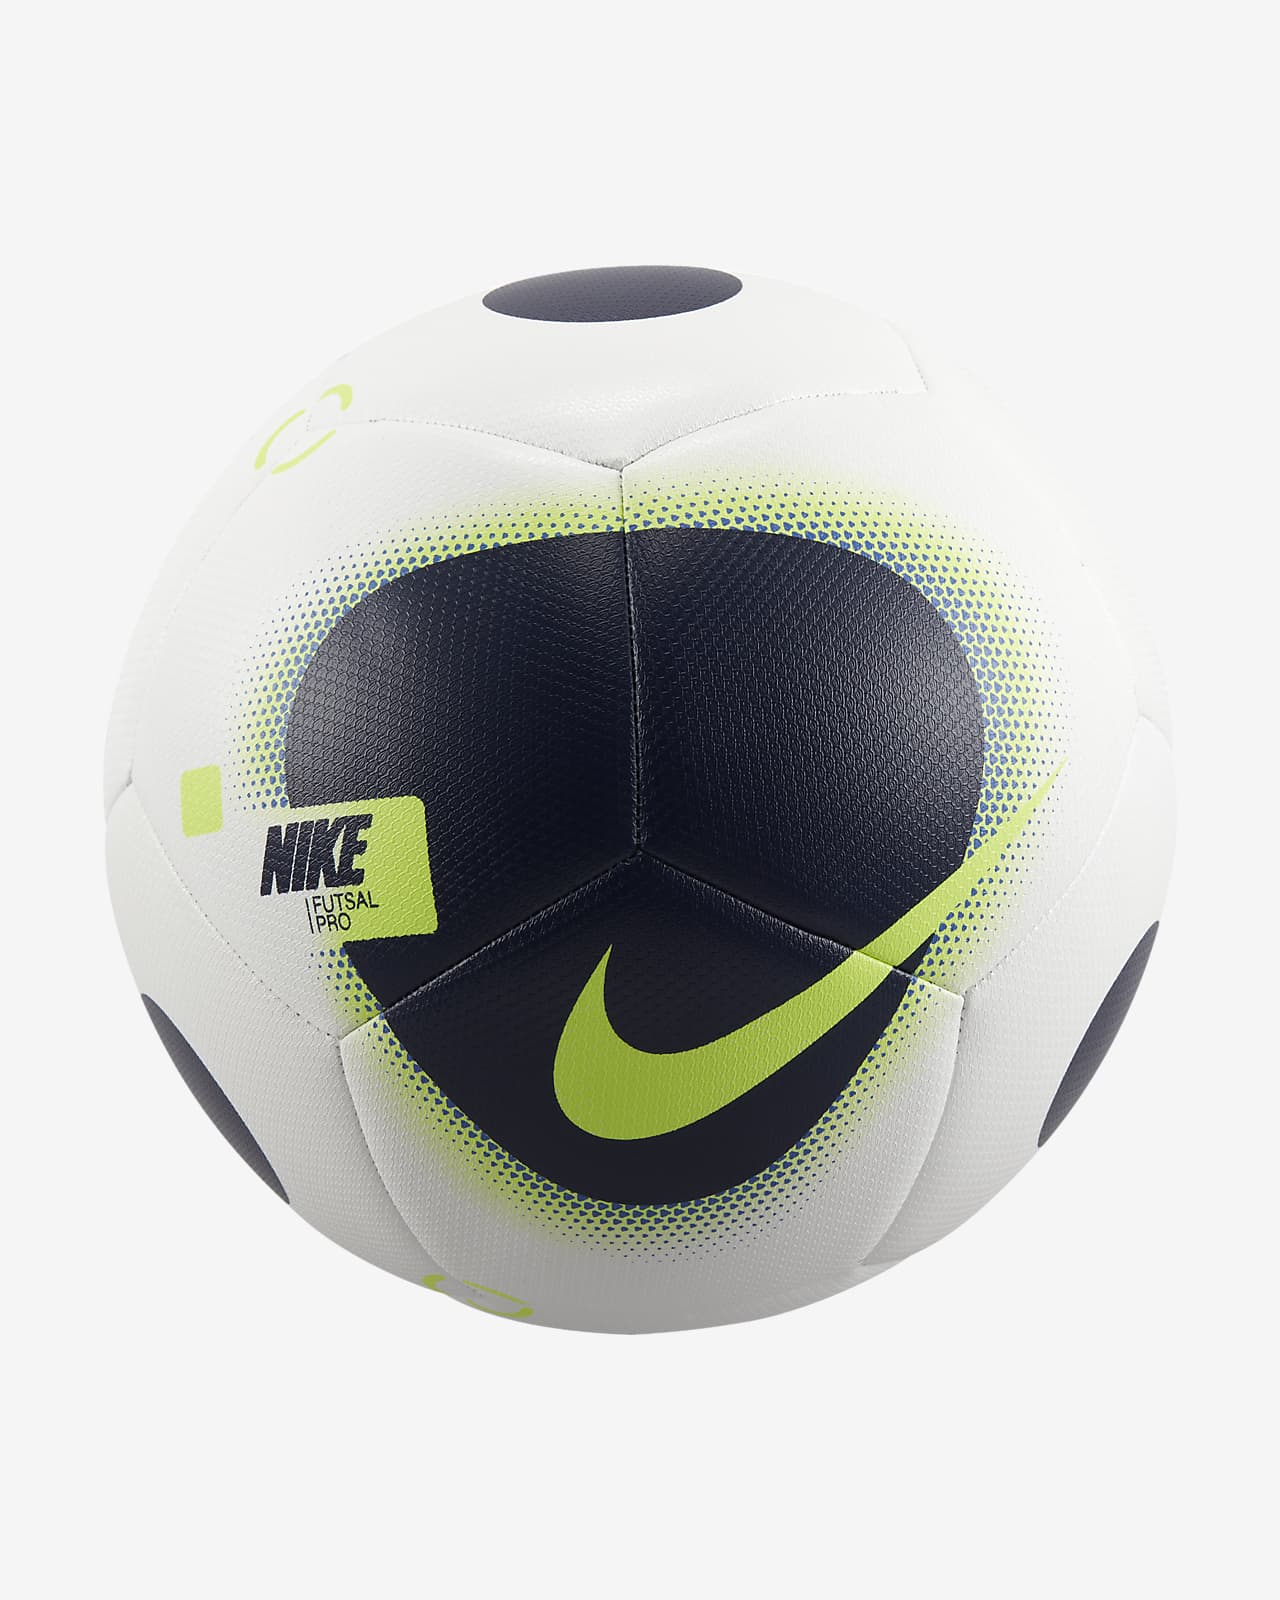 Nike Futsal Pro-fodbold